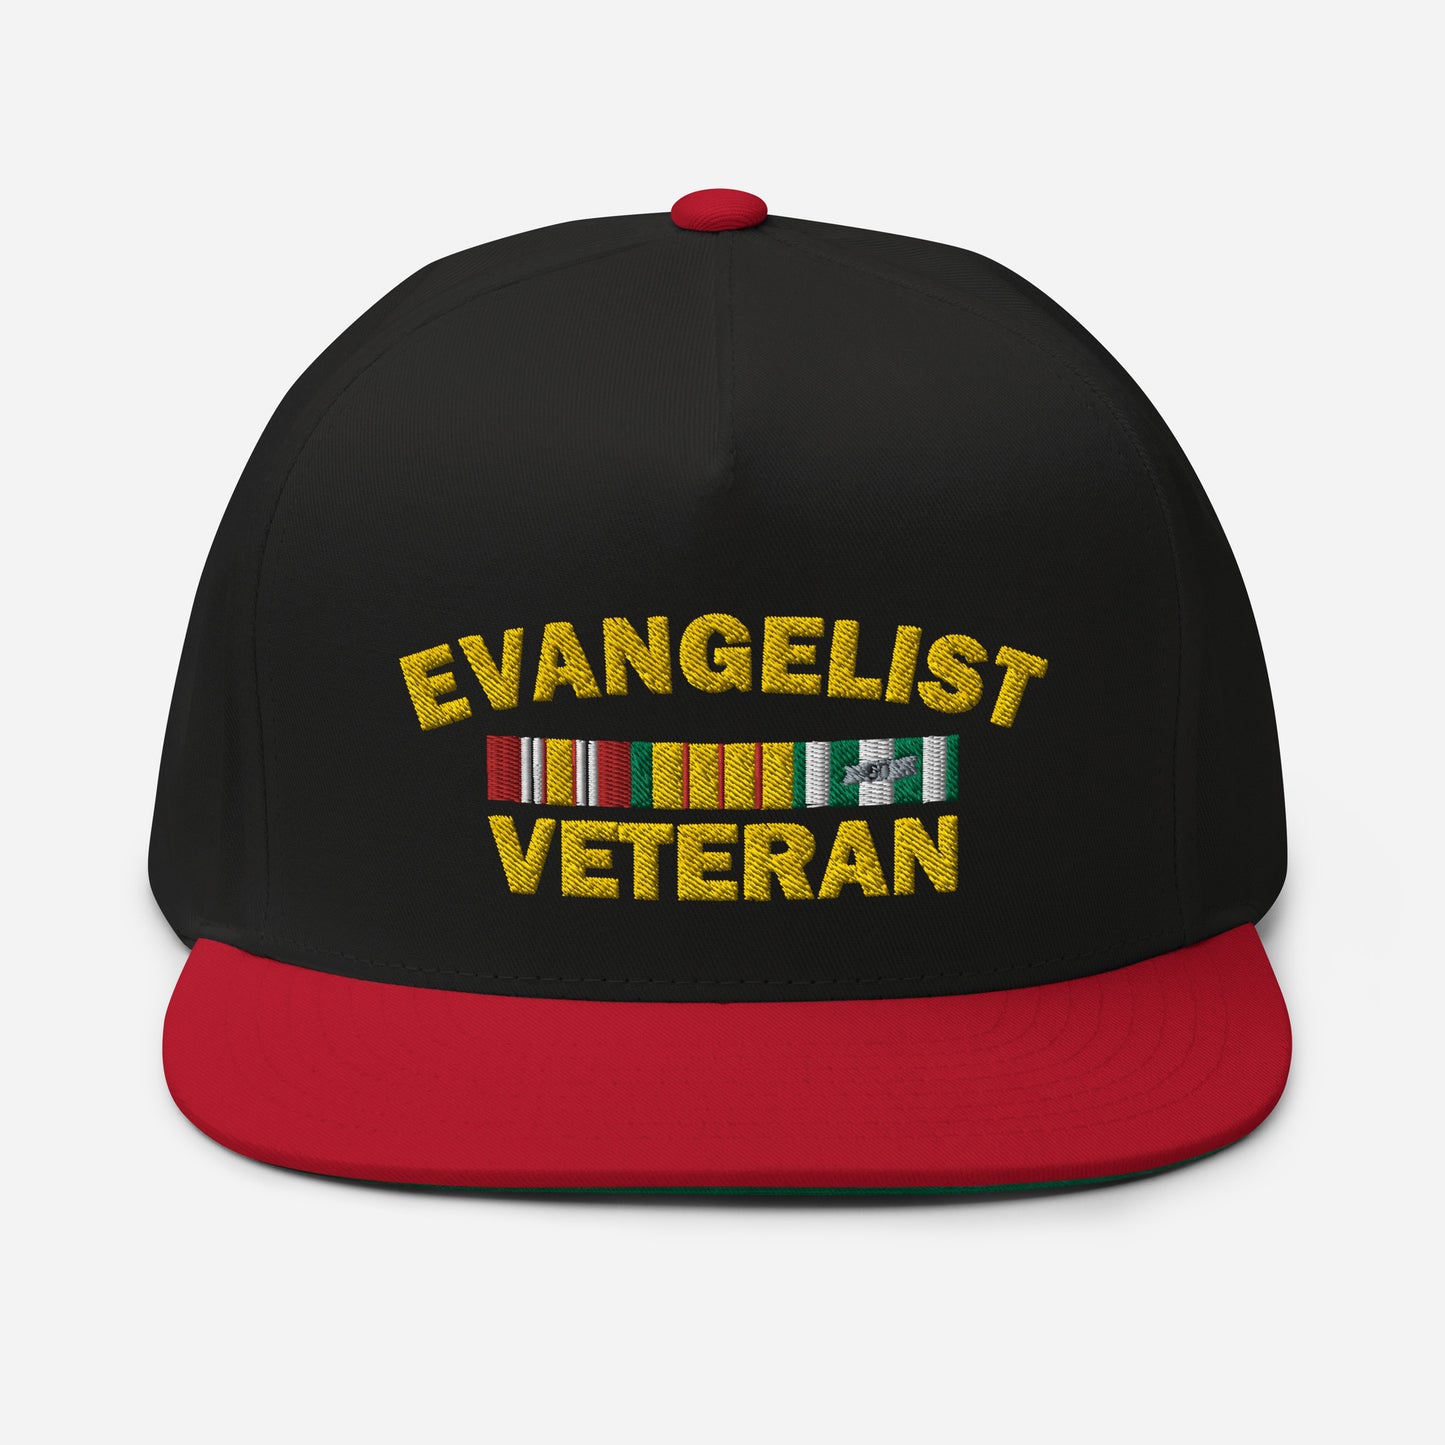 Evangelist Veteran Flat Bill Cap